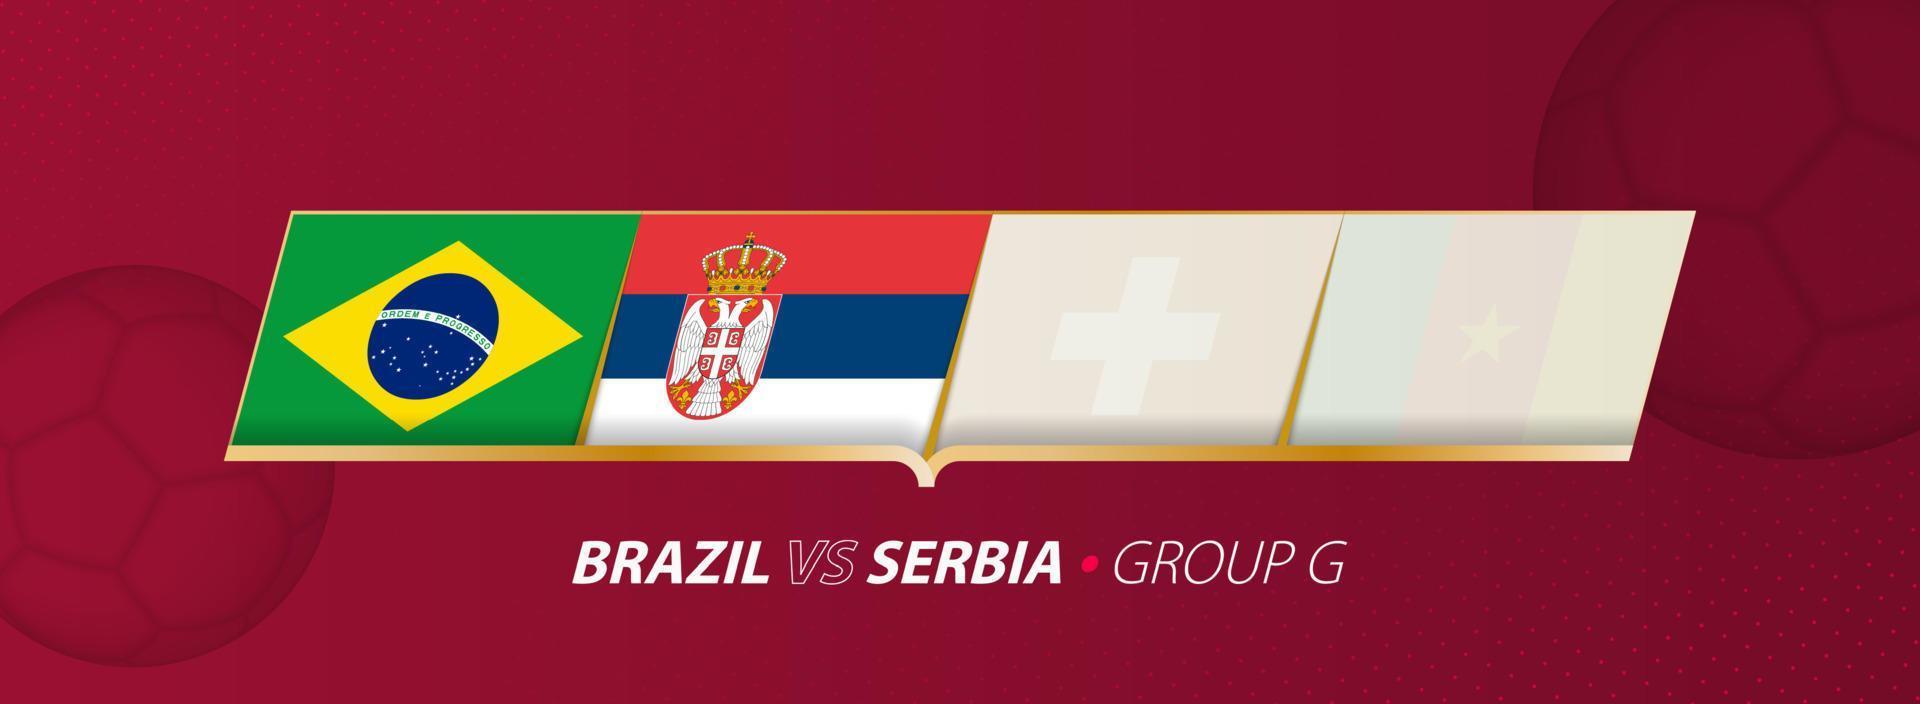 Brazilië - Servië Amerikaans voetbal bij elkaar passen illustratie in groep a. vector